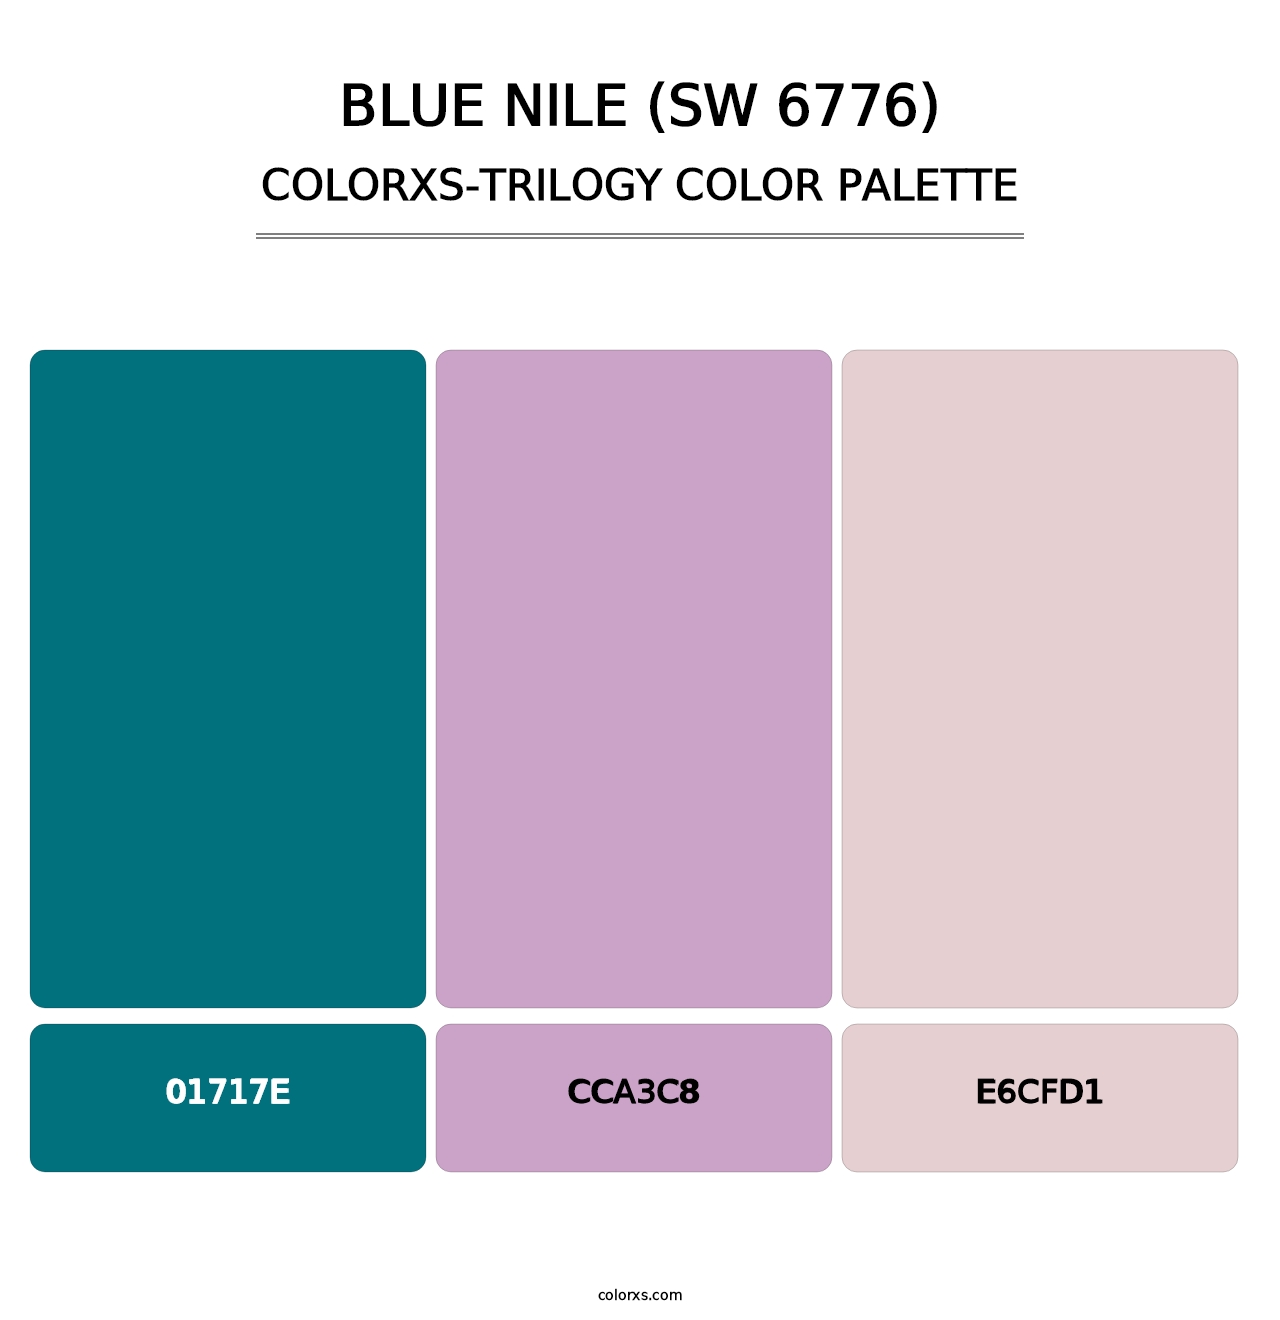 Blue Nile (SW 6776) - Colorxs Trilogy Palette